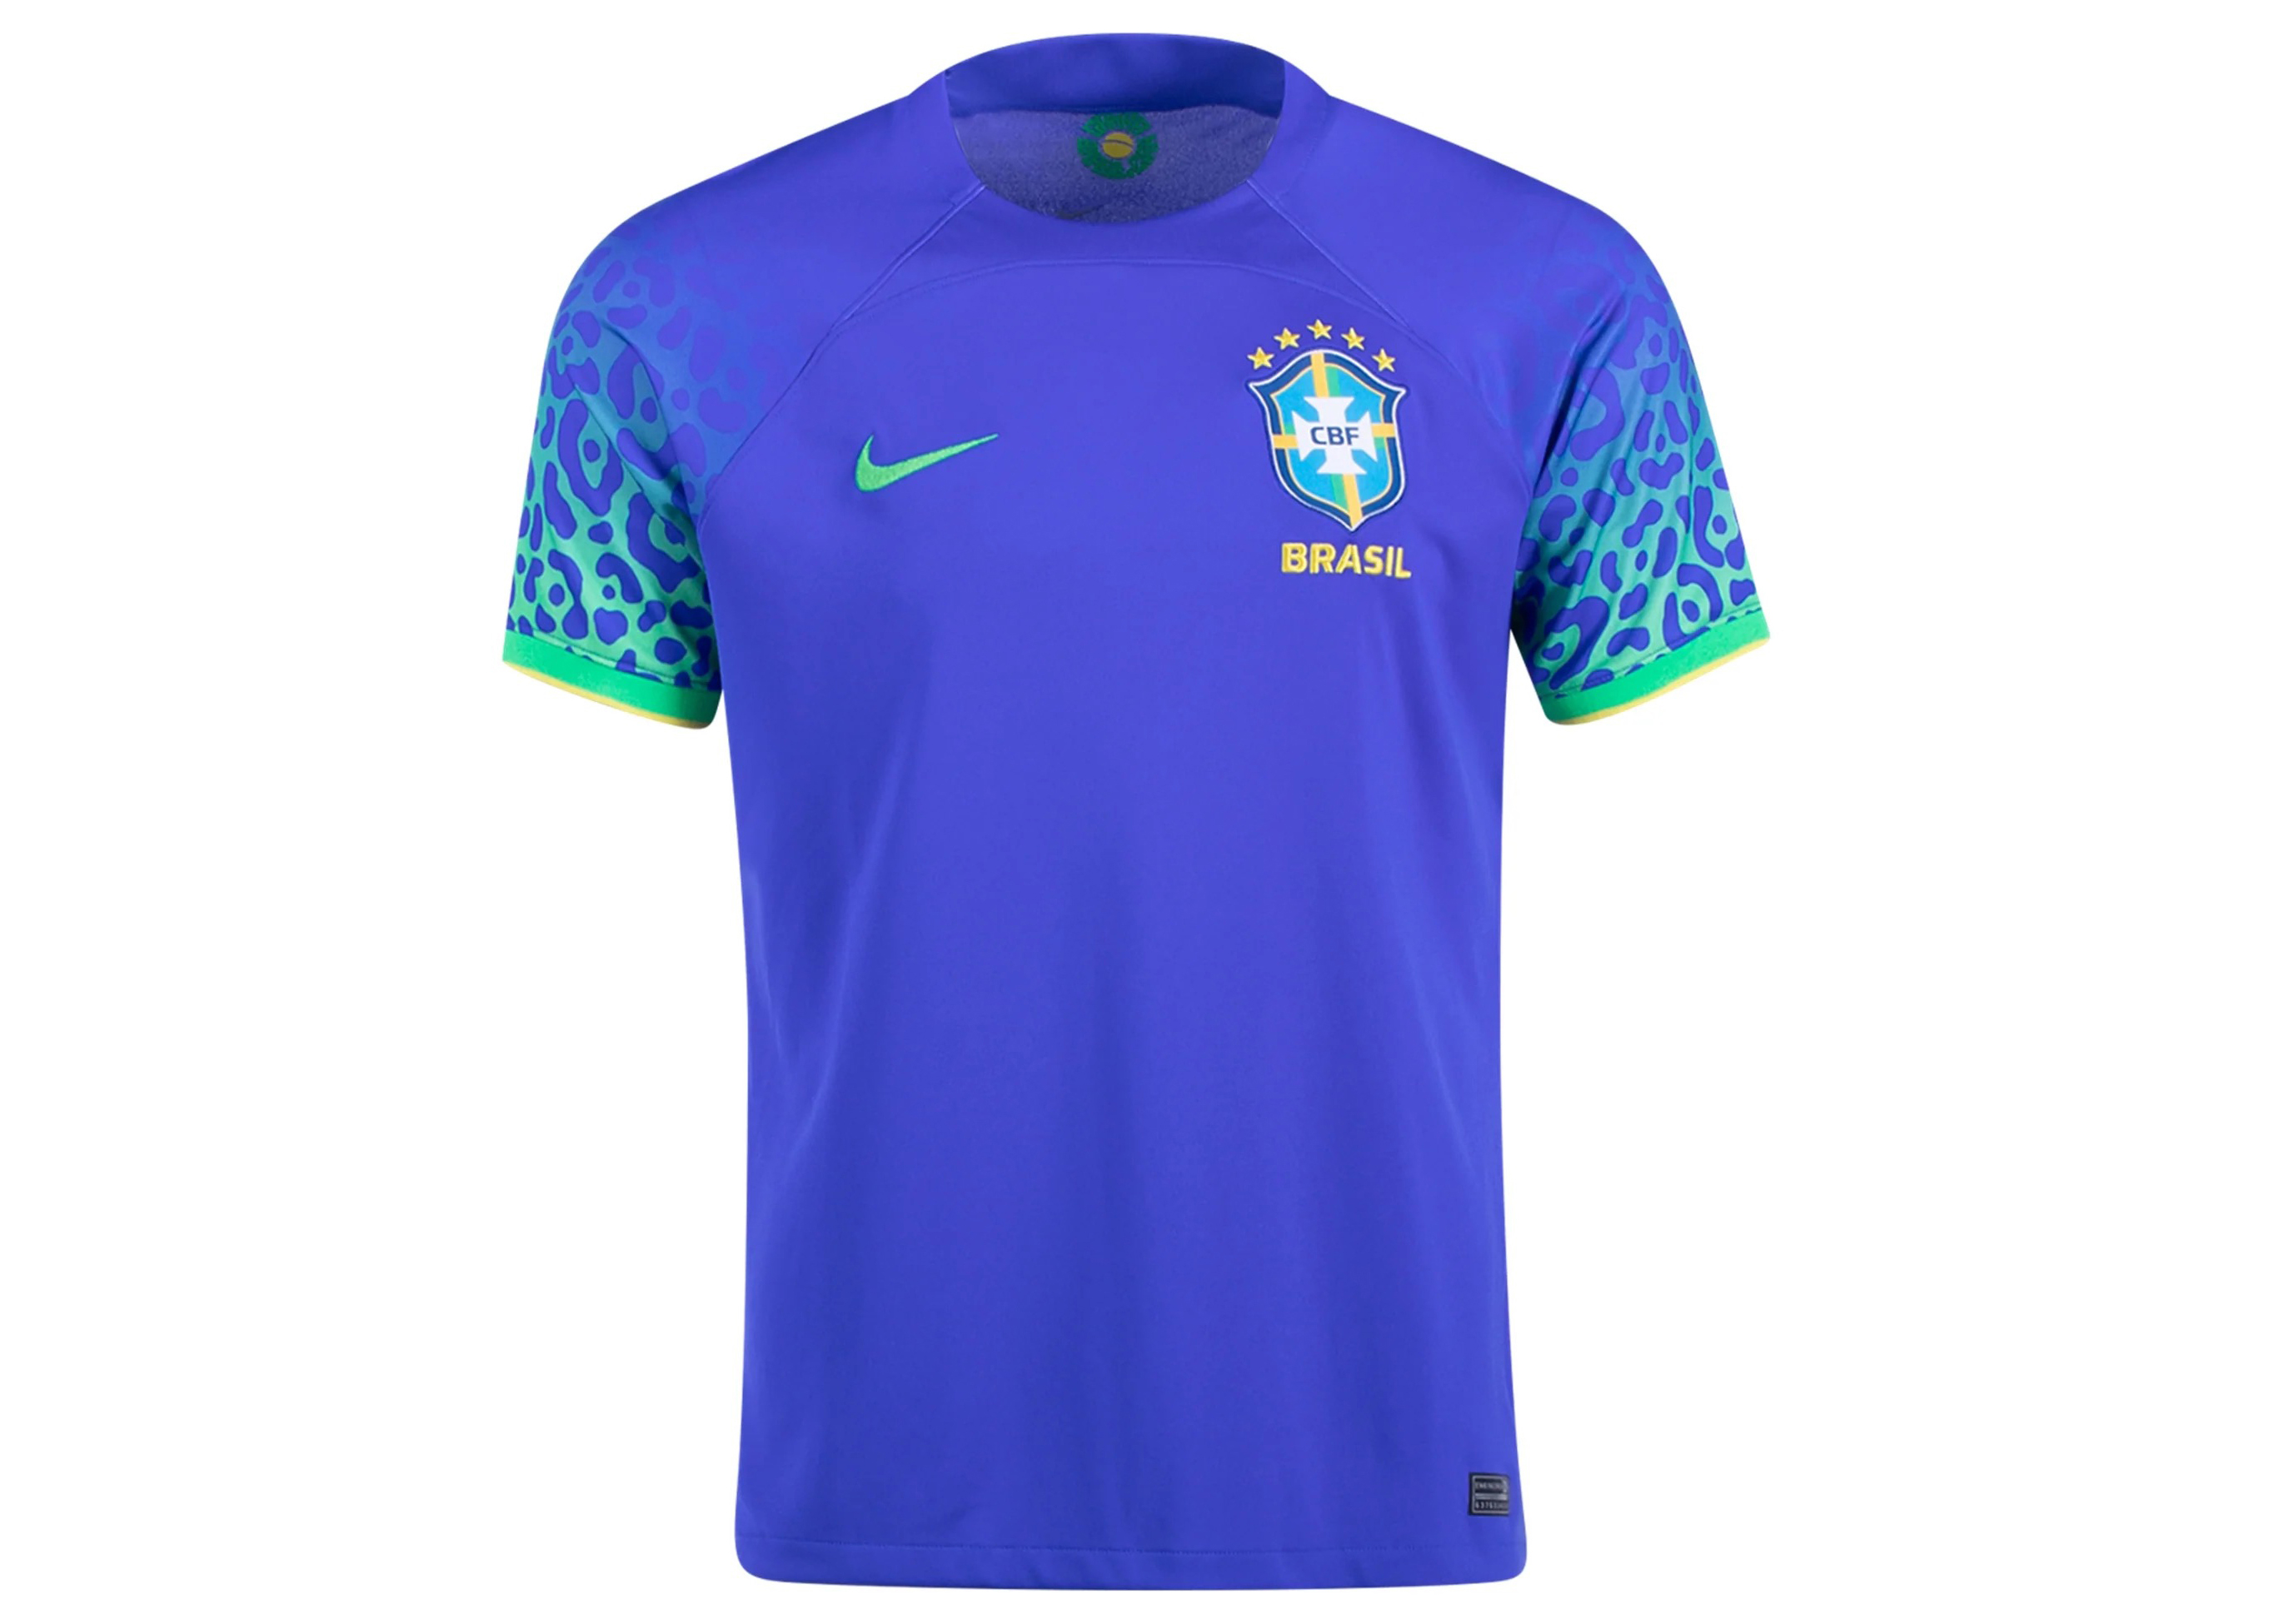 BRAZIL BRASIL 2018 WORLD CUP HOME FOOTBALL SOCCER SHIRT JERSEY